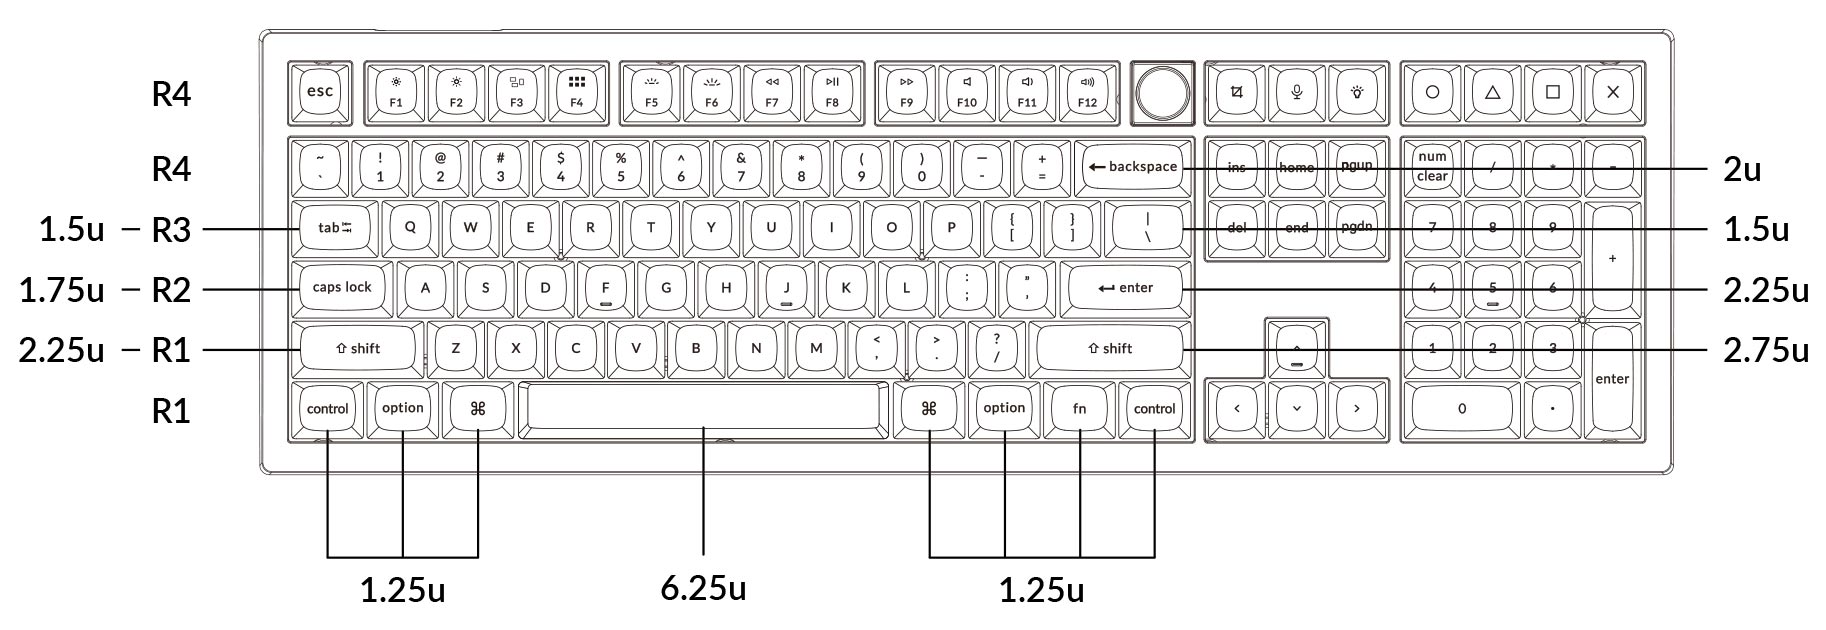 Keycap size of Keychron V6